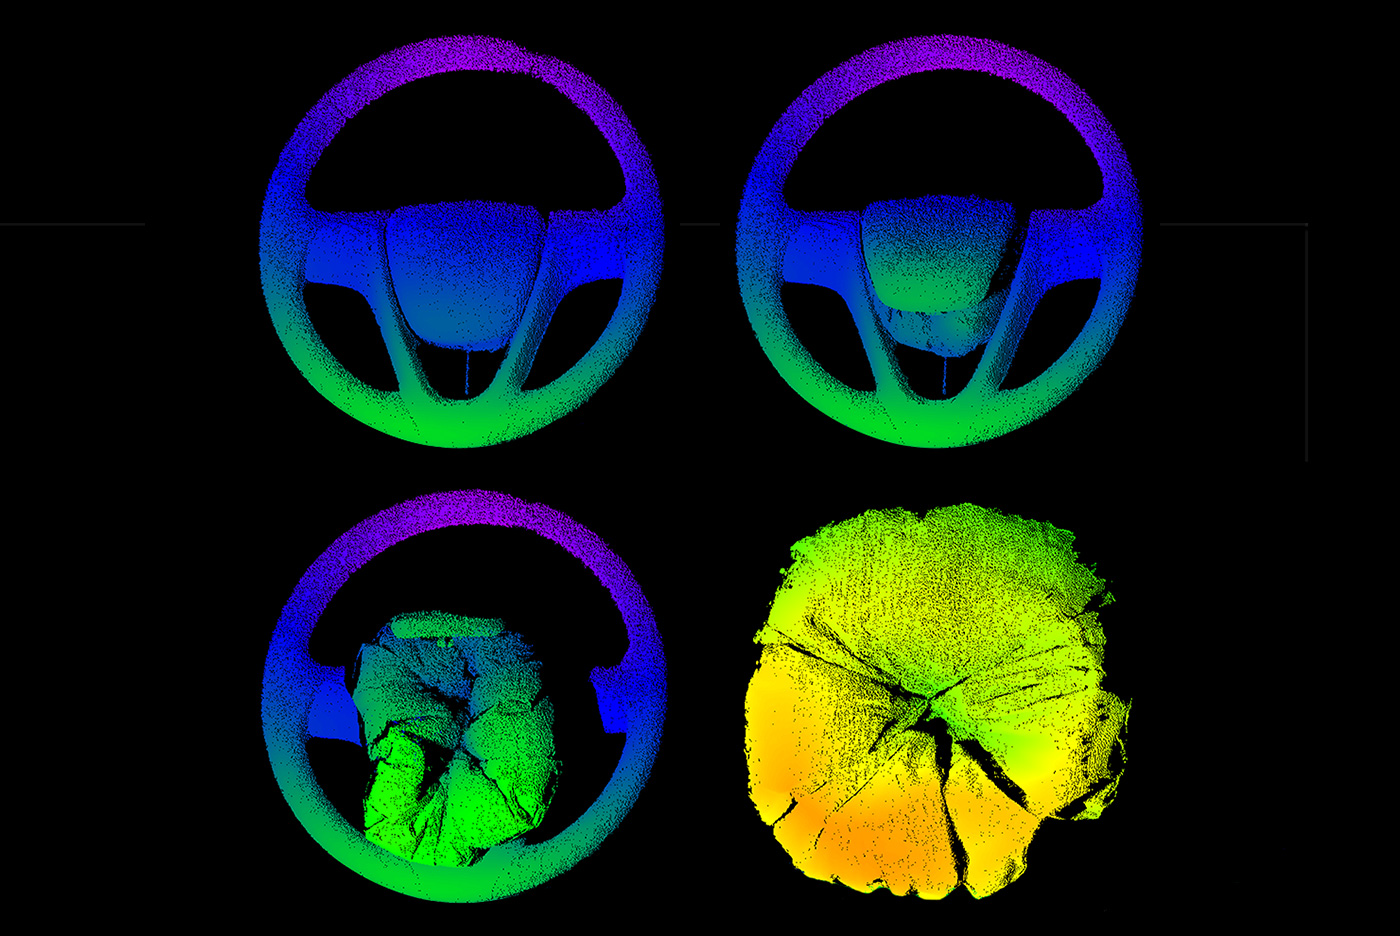 3D-Aufnahmen von der Entfaltung eines Airbags zu vier verschiedenen Zeitpunkten.